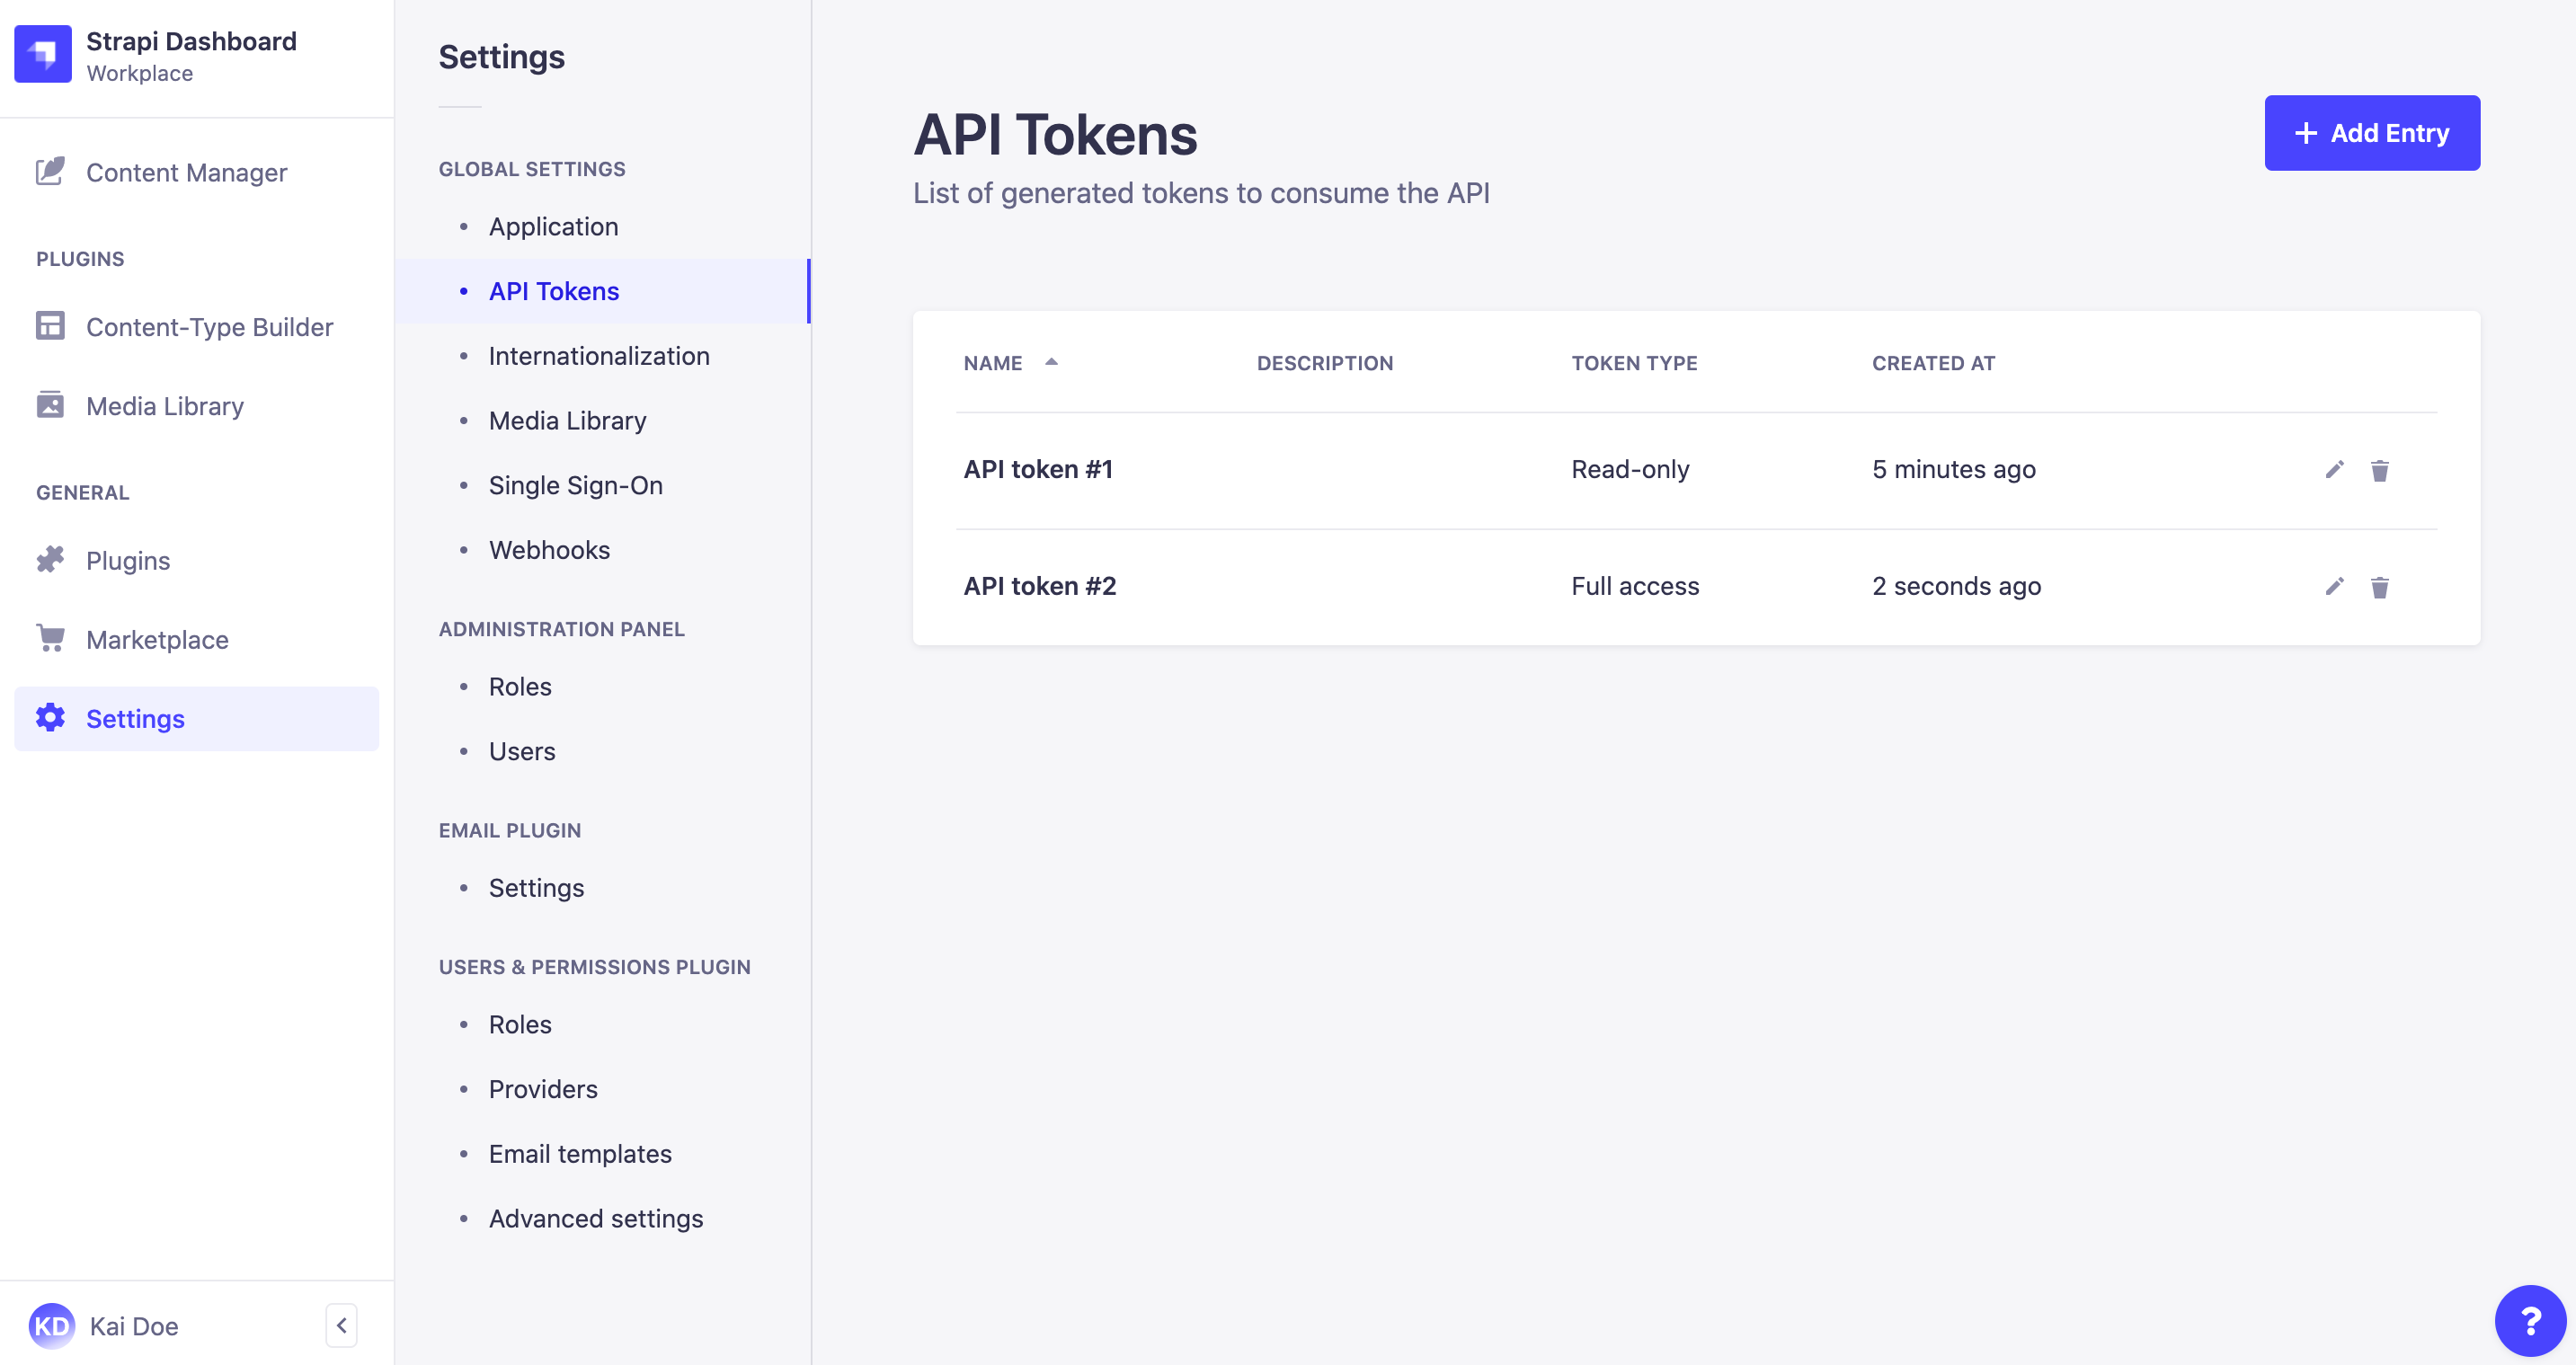 API tokens